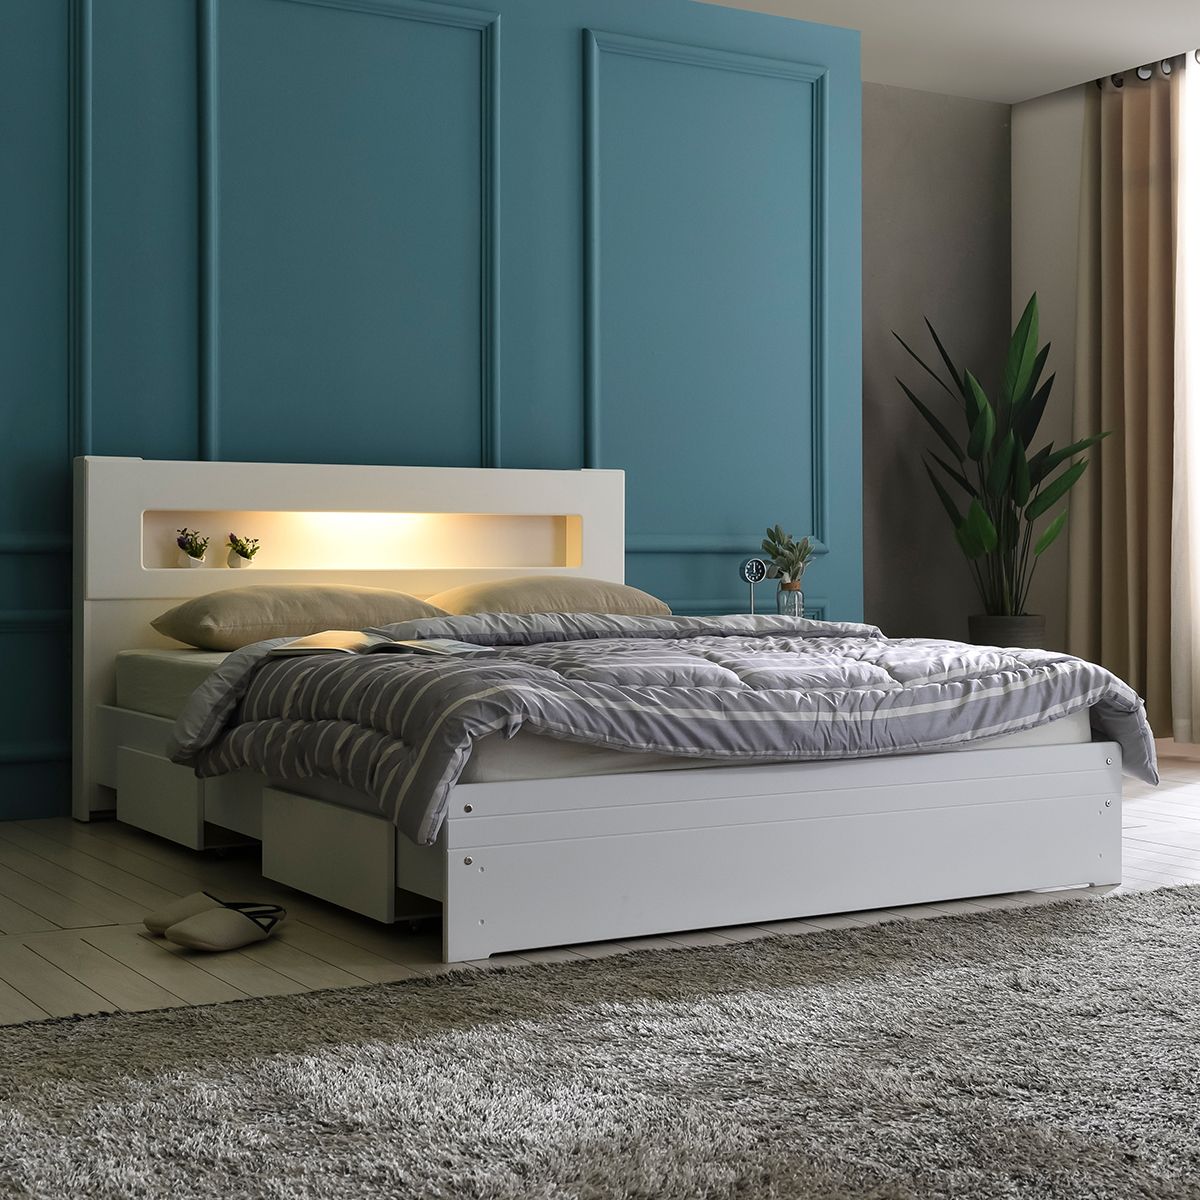  20 Điều cần kiêng cữ trong phong thủy phòng ngủ và cách đặt gương - Dongsuh Furniture